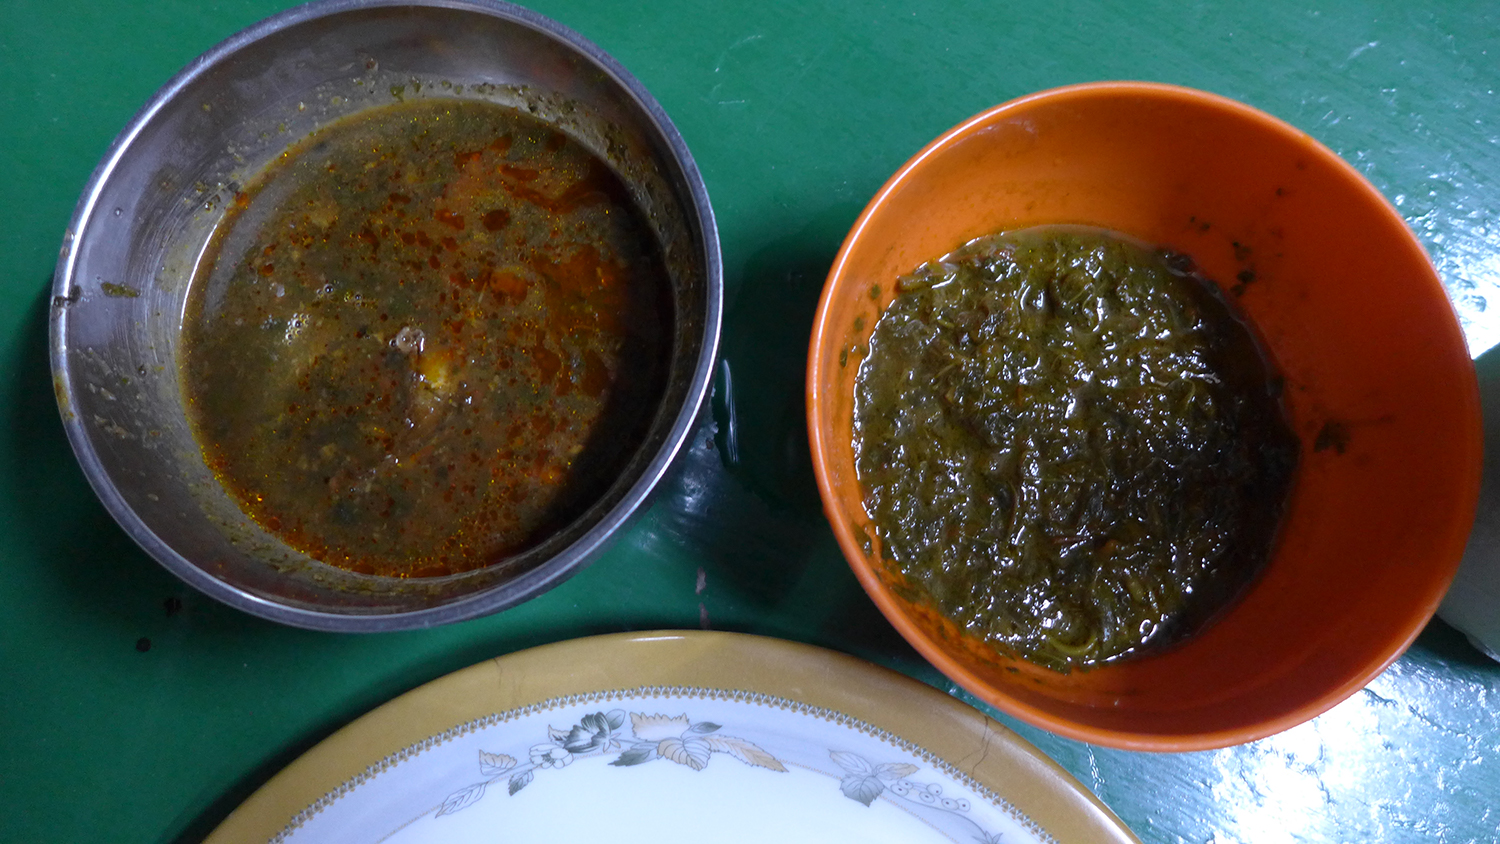 Les sauces ne manquent pas dans les maquis. Voici les deux sauces les plus populaires, celle faite avec du gombo et la deuxième à base d’oseille.